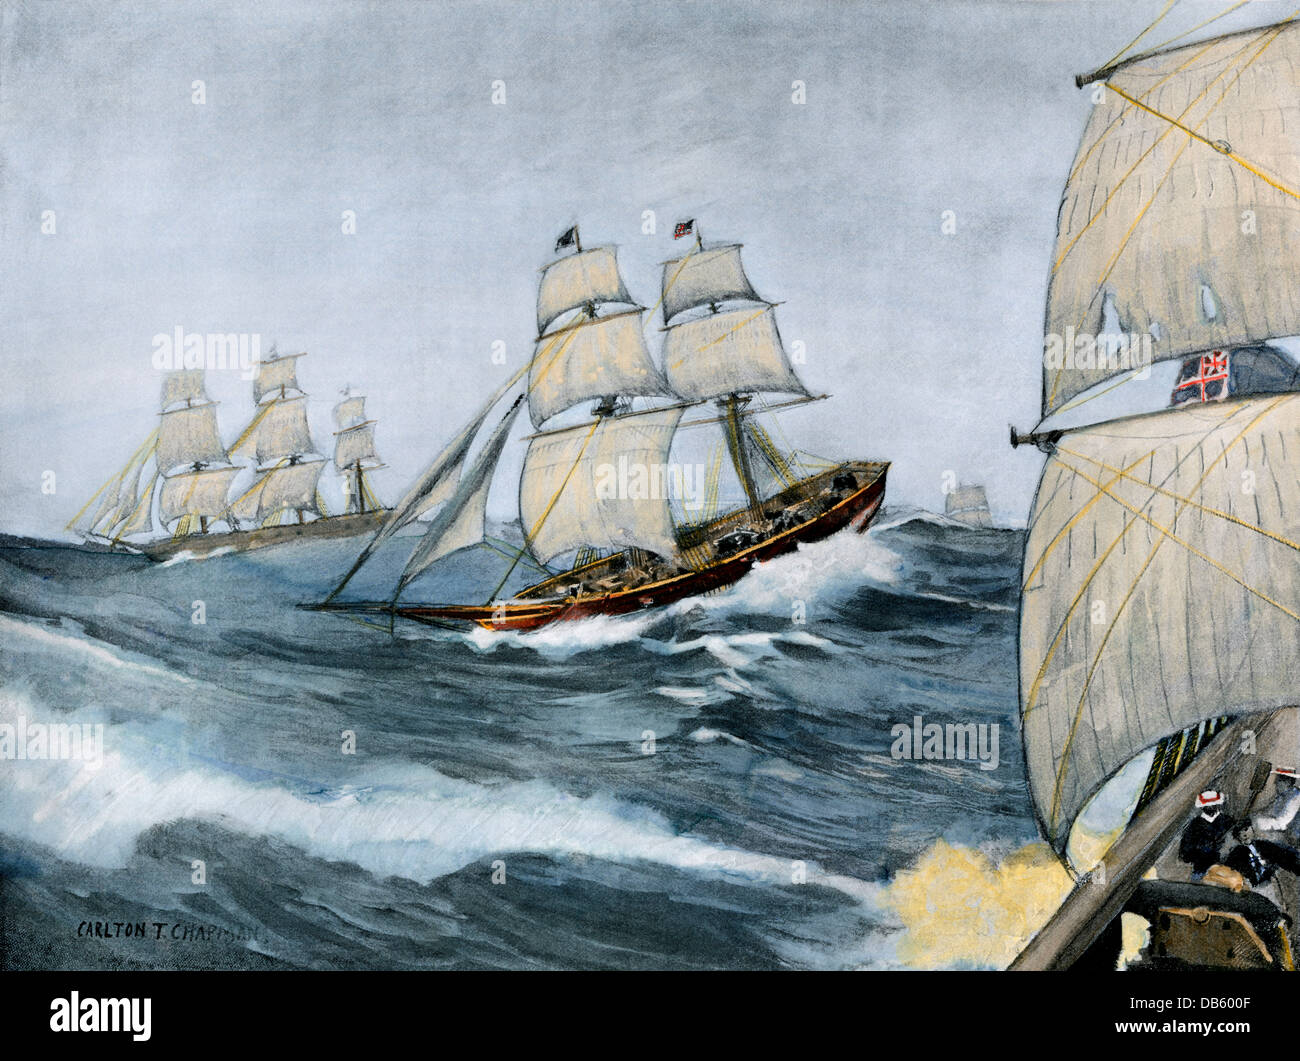 American privateer 'Comet' Segeln durch die englische Flotte, Krieg von 1812. Handcolorierte halftone einer Abbildung Stockfoto